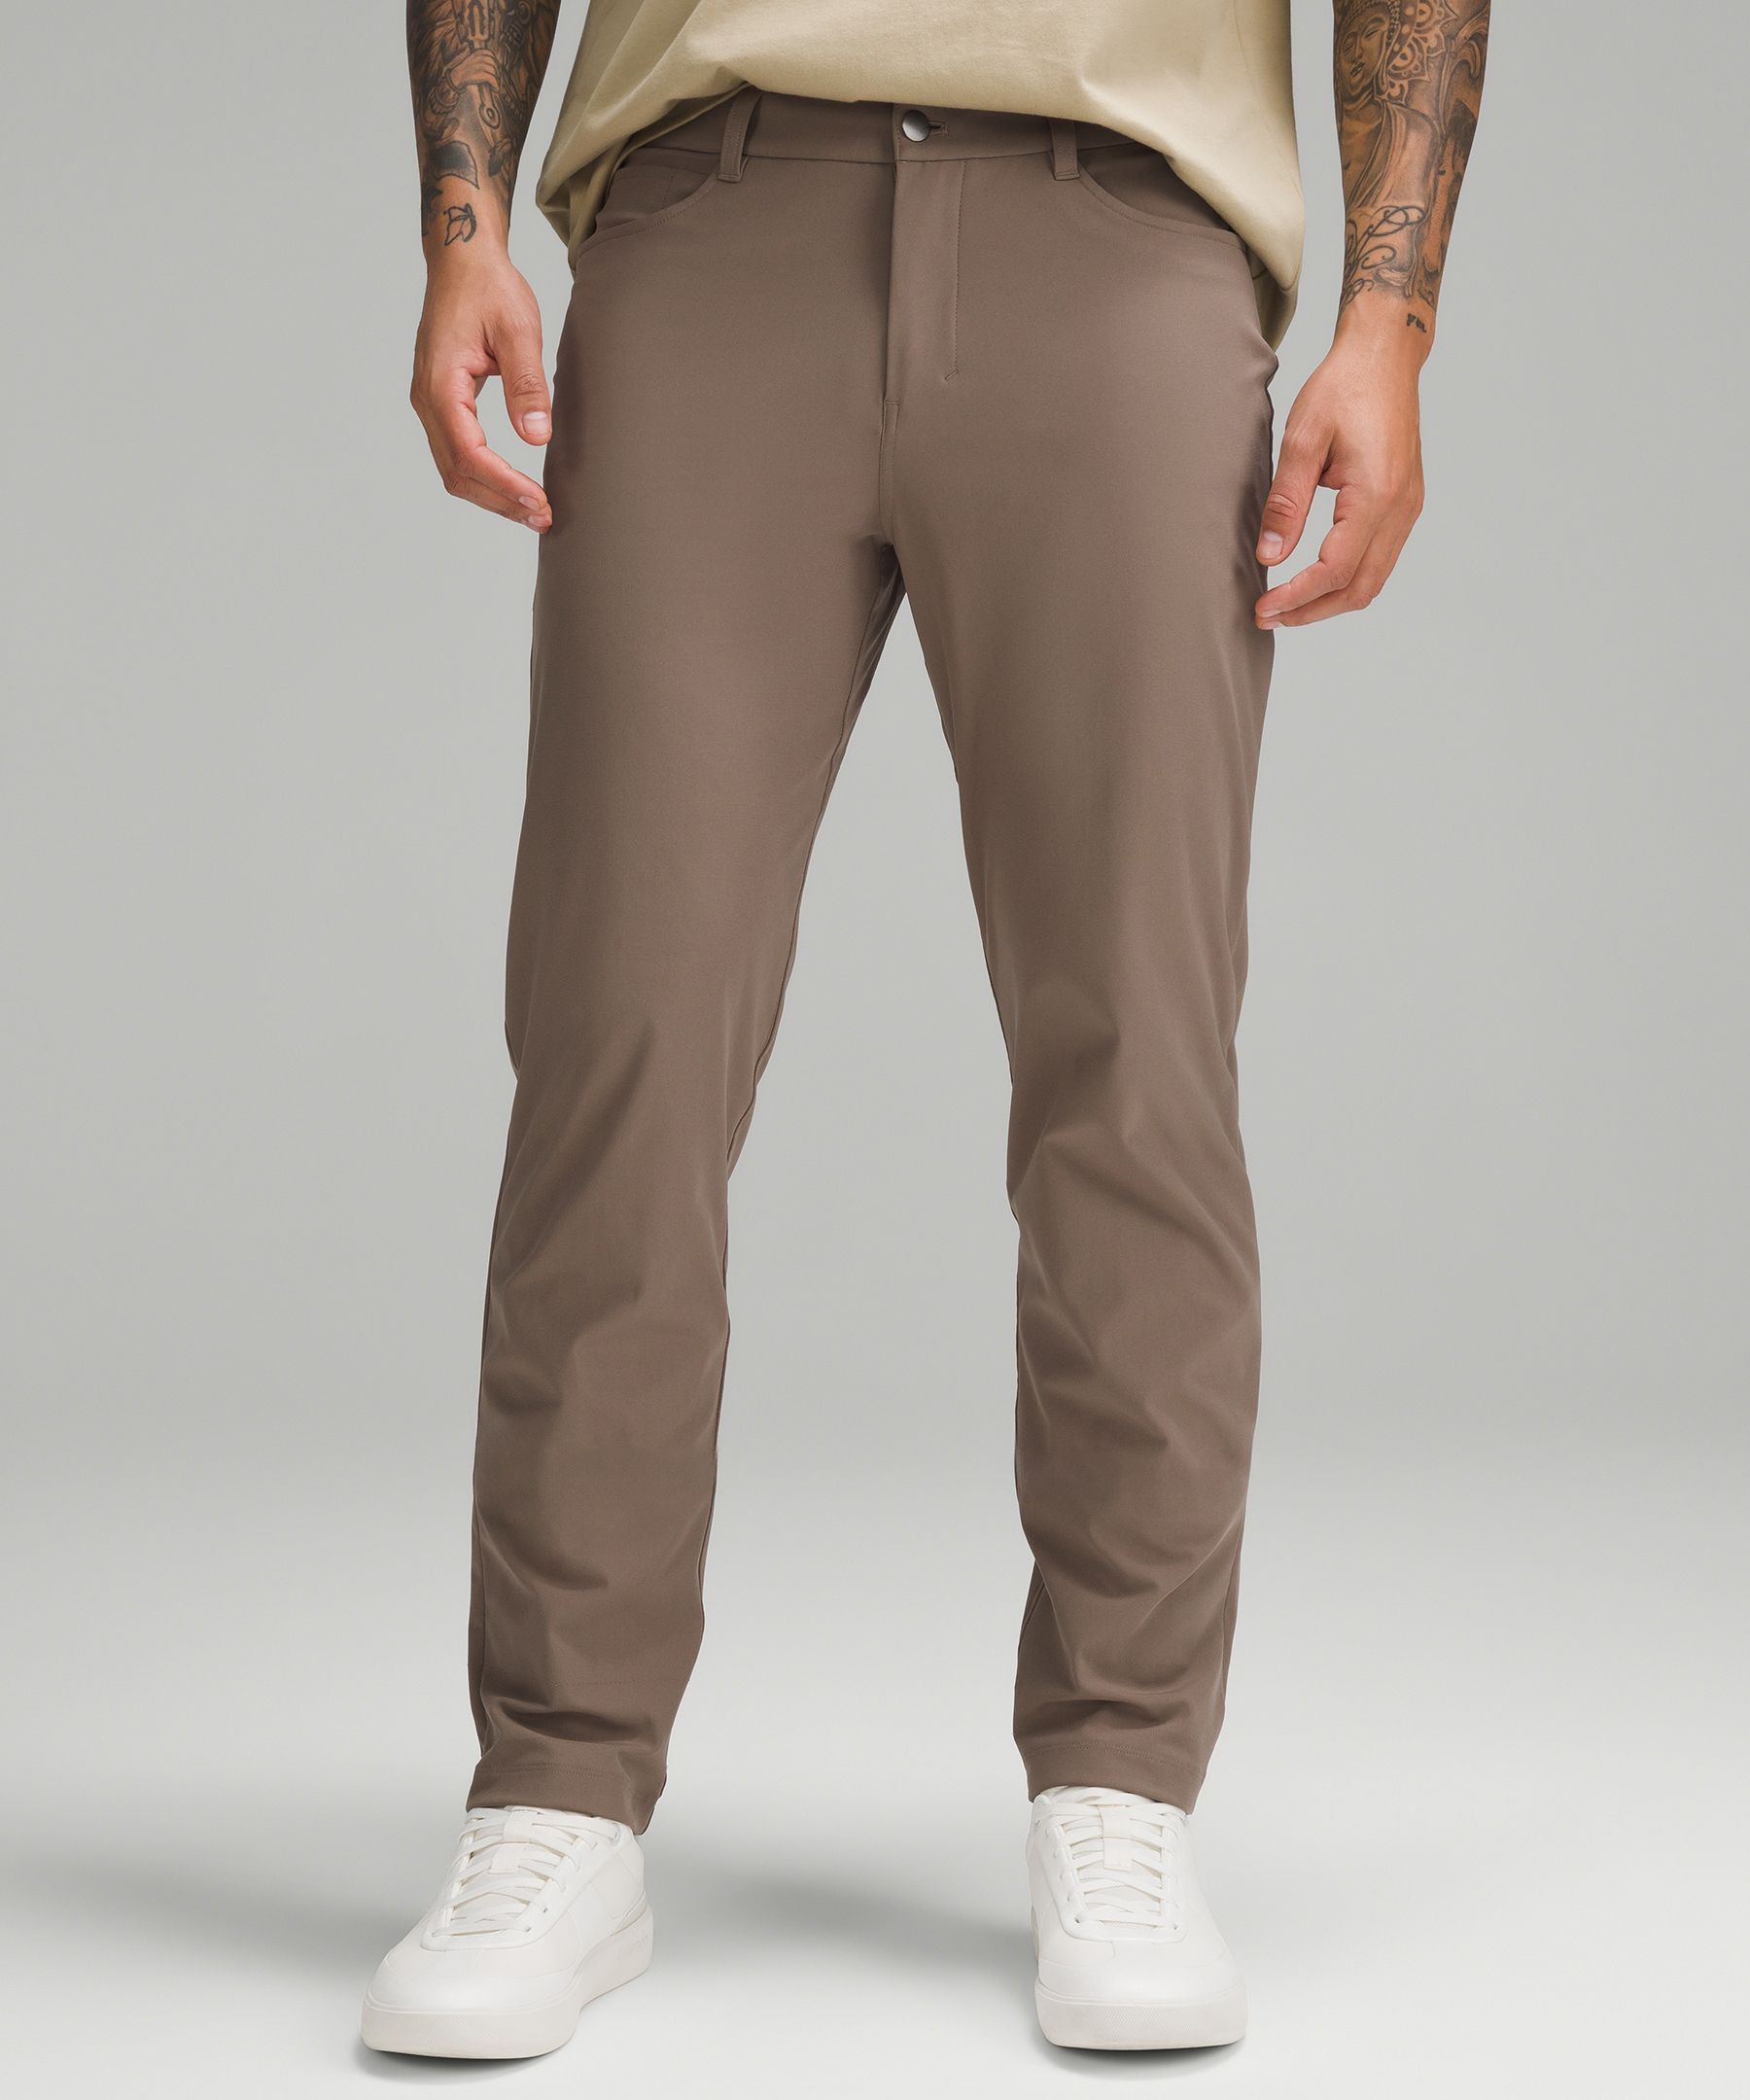 Mens BC Clothing Company Pants (32 X 30)